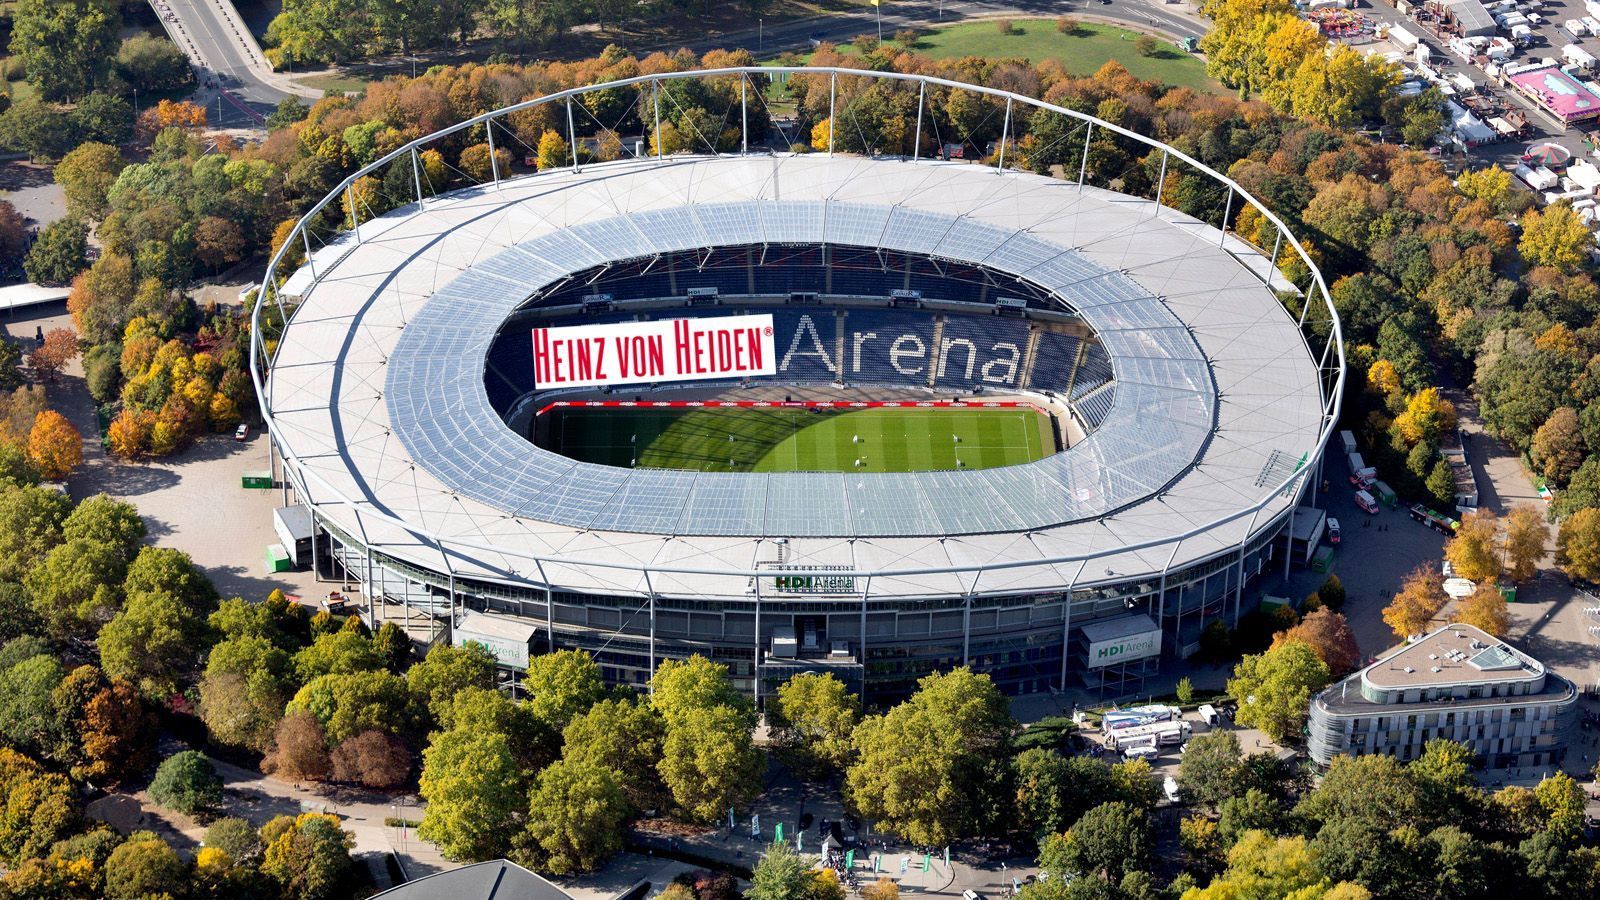 
                <strong>Heinz von Heiden Arena (Hannover 96)</strong><br>
                &#x2022; Kapazität: 49.000<br>&#x2022; Sitzplätze: 41.000<br>&#x2022; Stehplätze: 8.000<br>&#x2022; Logen: 29<br>
              